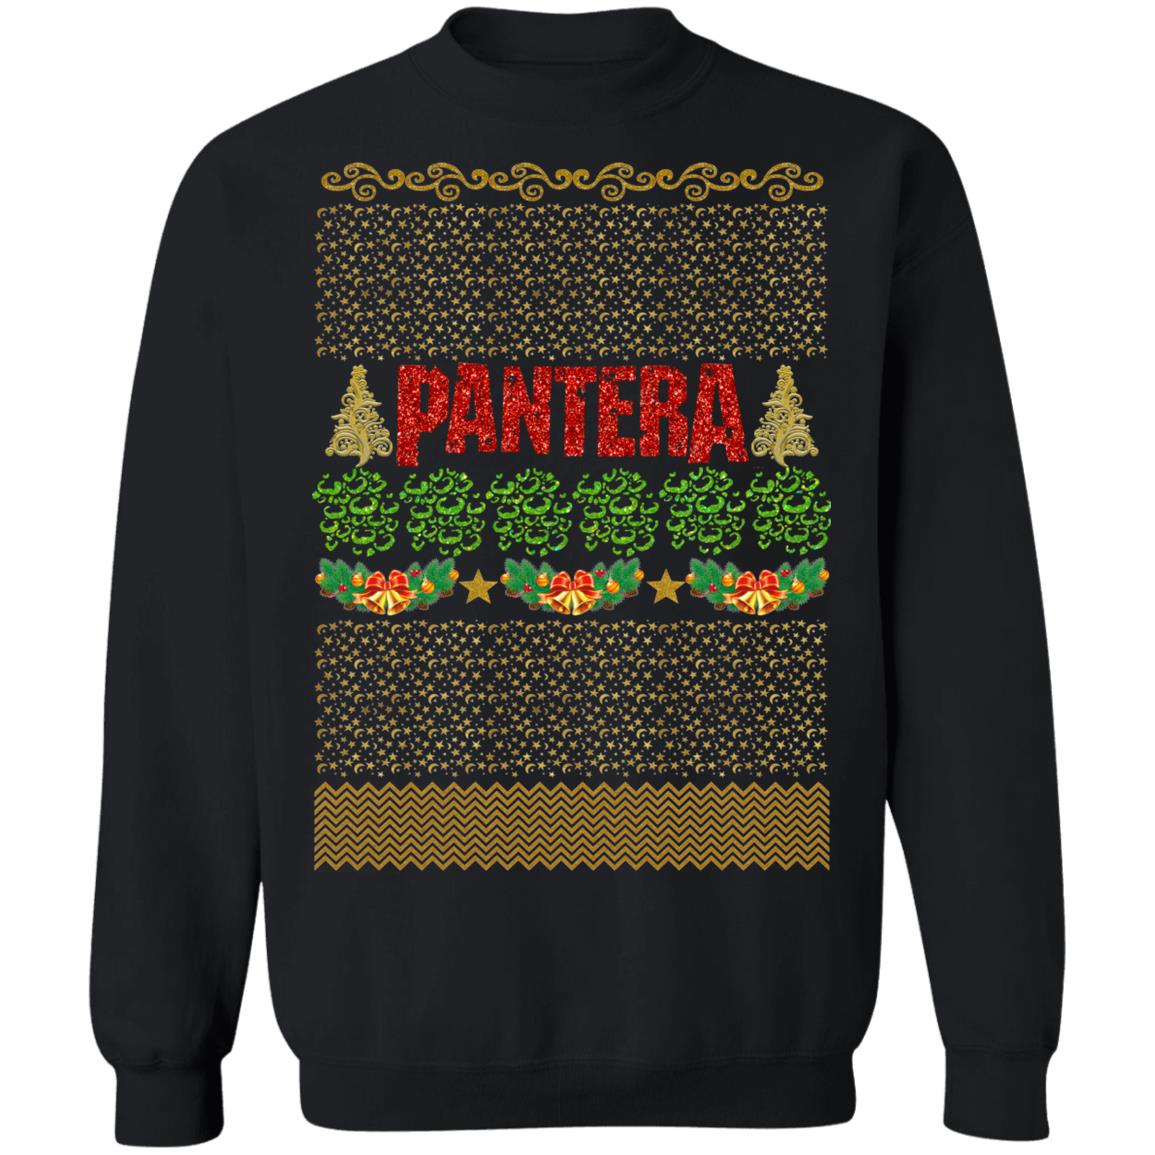 pantera holiday sweater. 